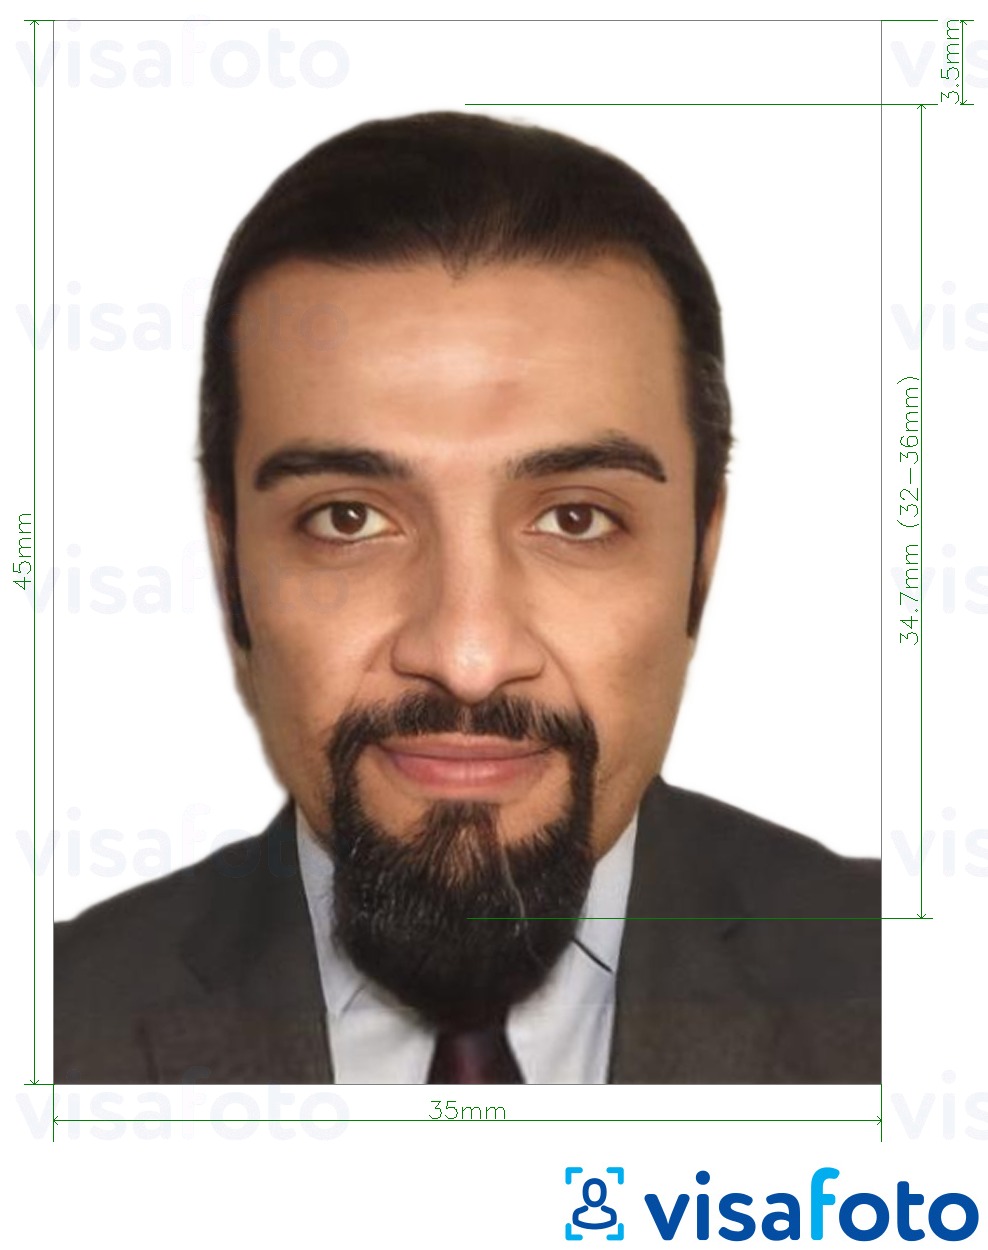 Contoh dari foto untuk Paspor Aljazair 35x45 mm (3,5x4,5 cm) dengan ukuran spesifikasi yang tepat